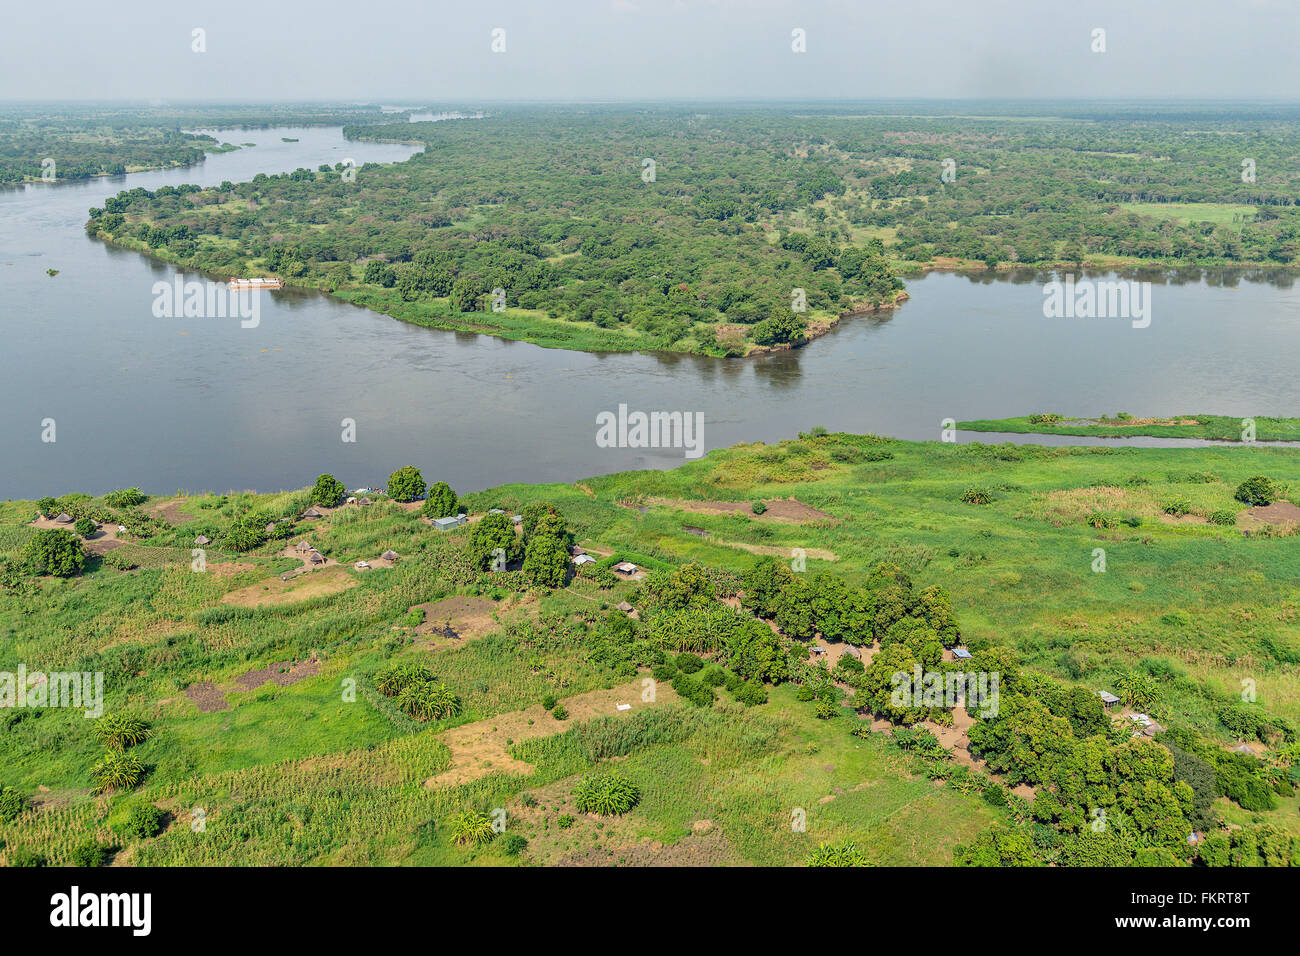 Vue aérienne de la rivière du Nil près de Juba, la capitale du Soudan. Banque D'Images